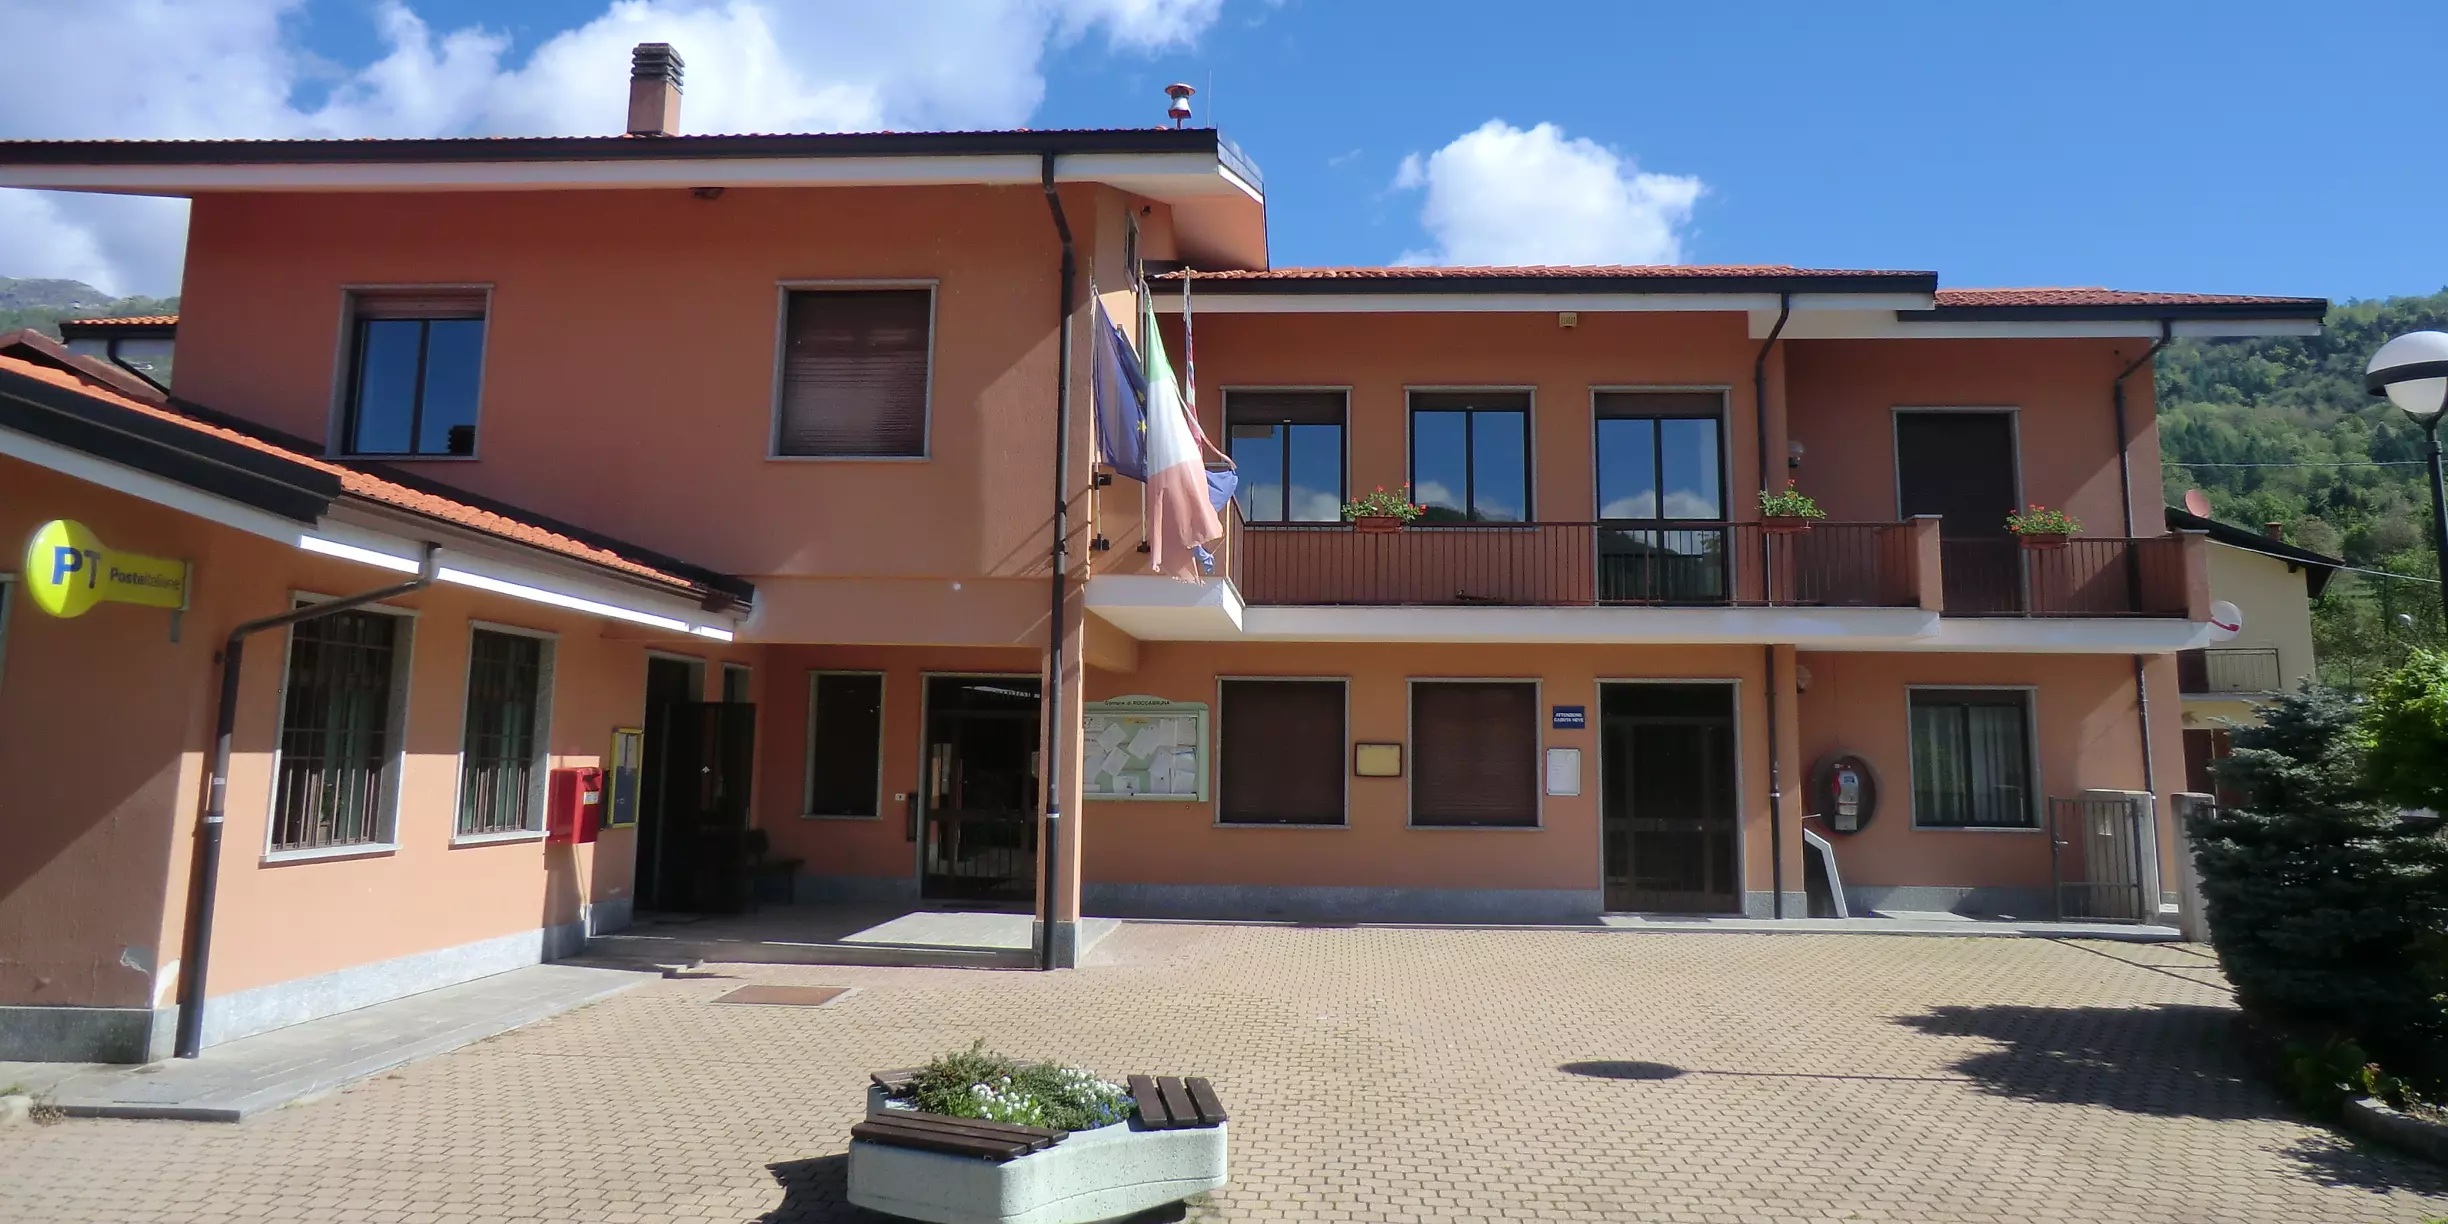 Municipio di Roccabruna